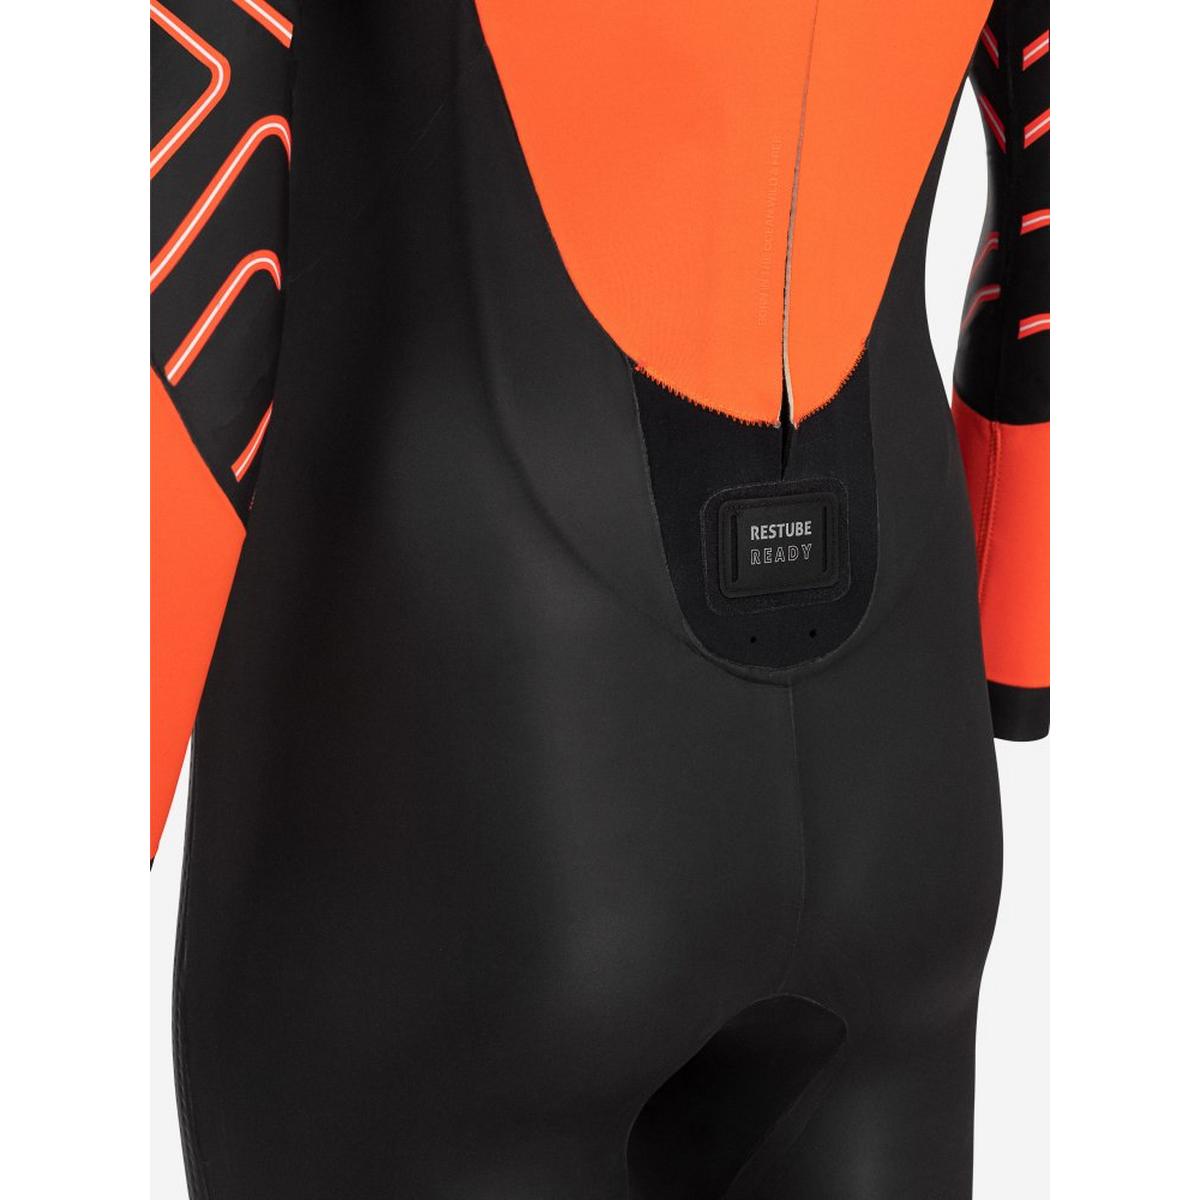 Orca Men's Zeal Hi-Vis Openwater Swim Wetsuit - Orange